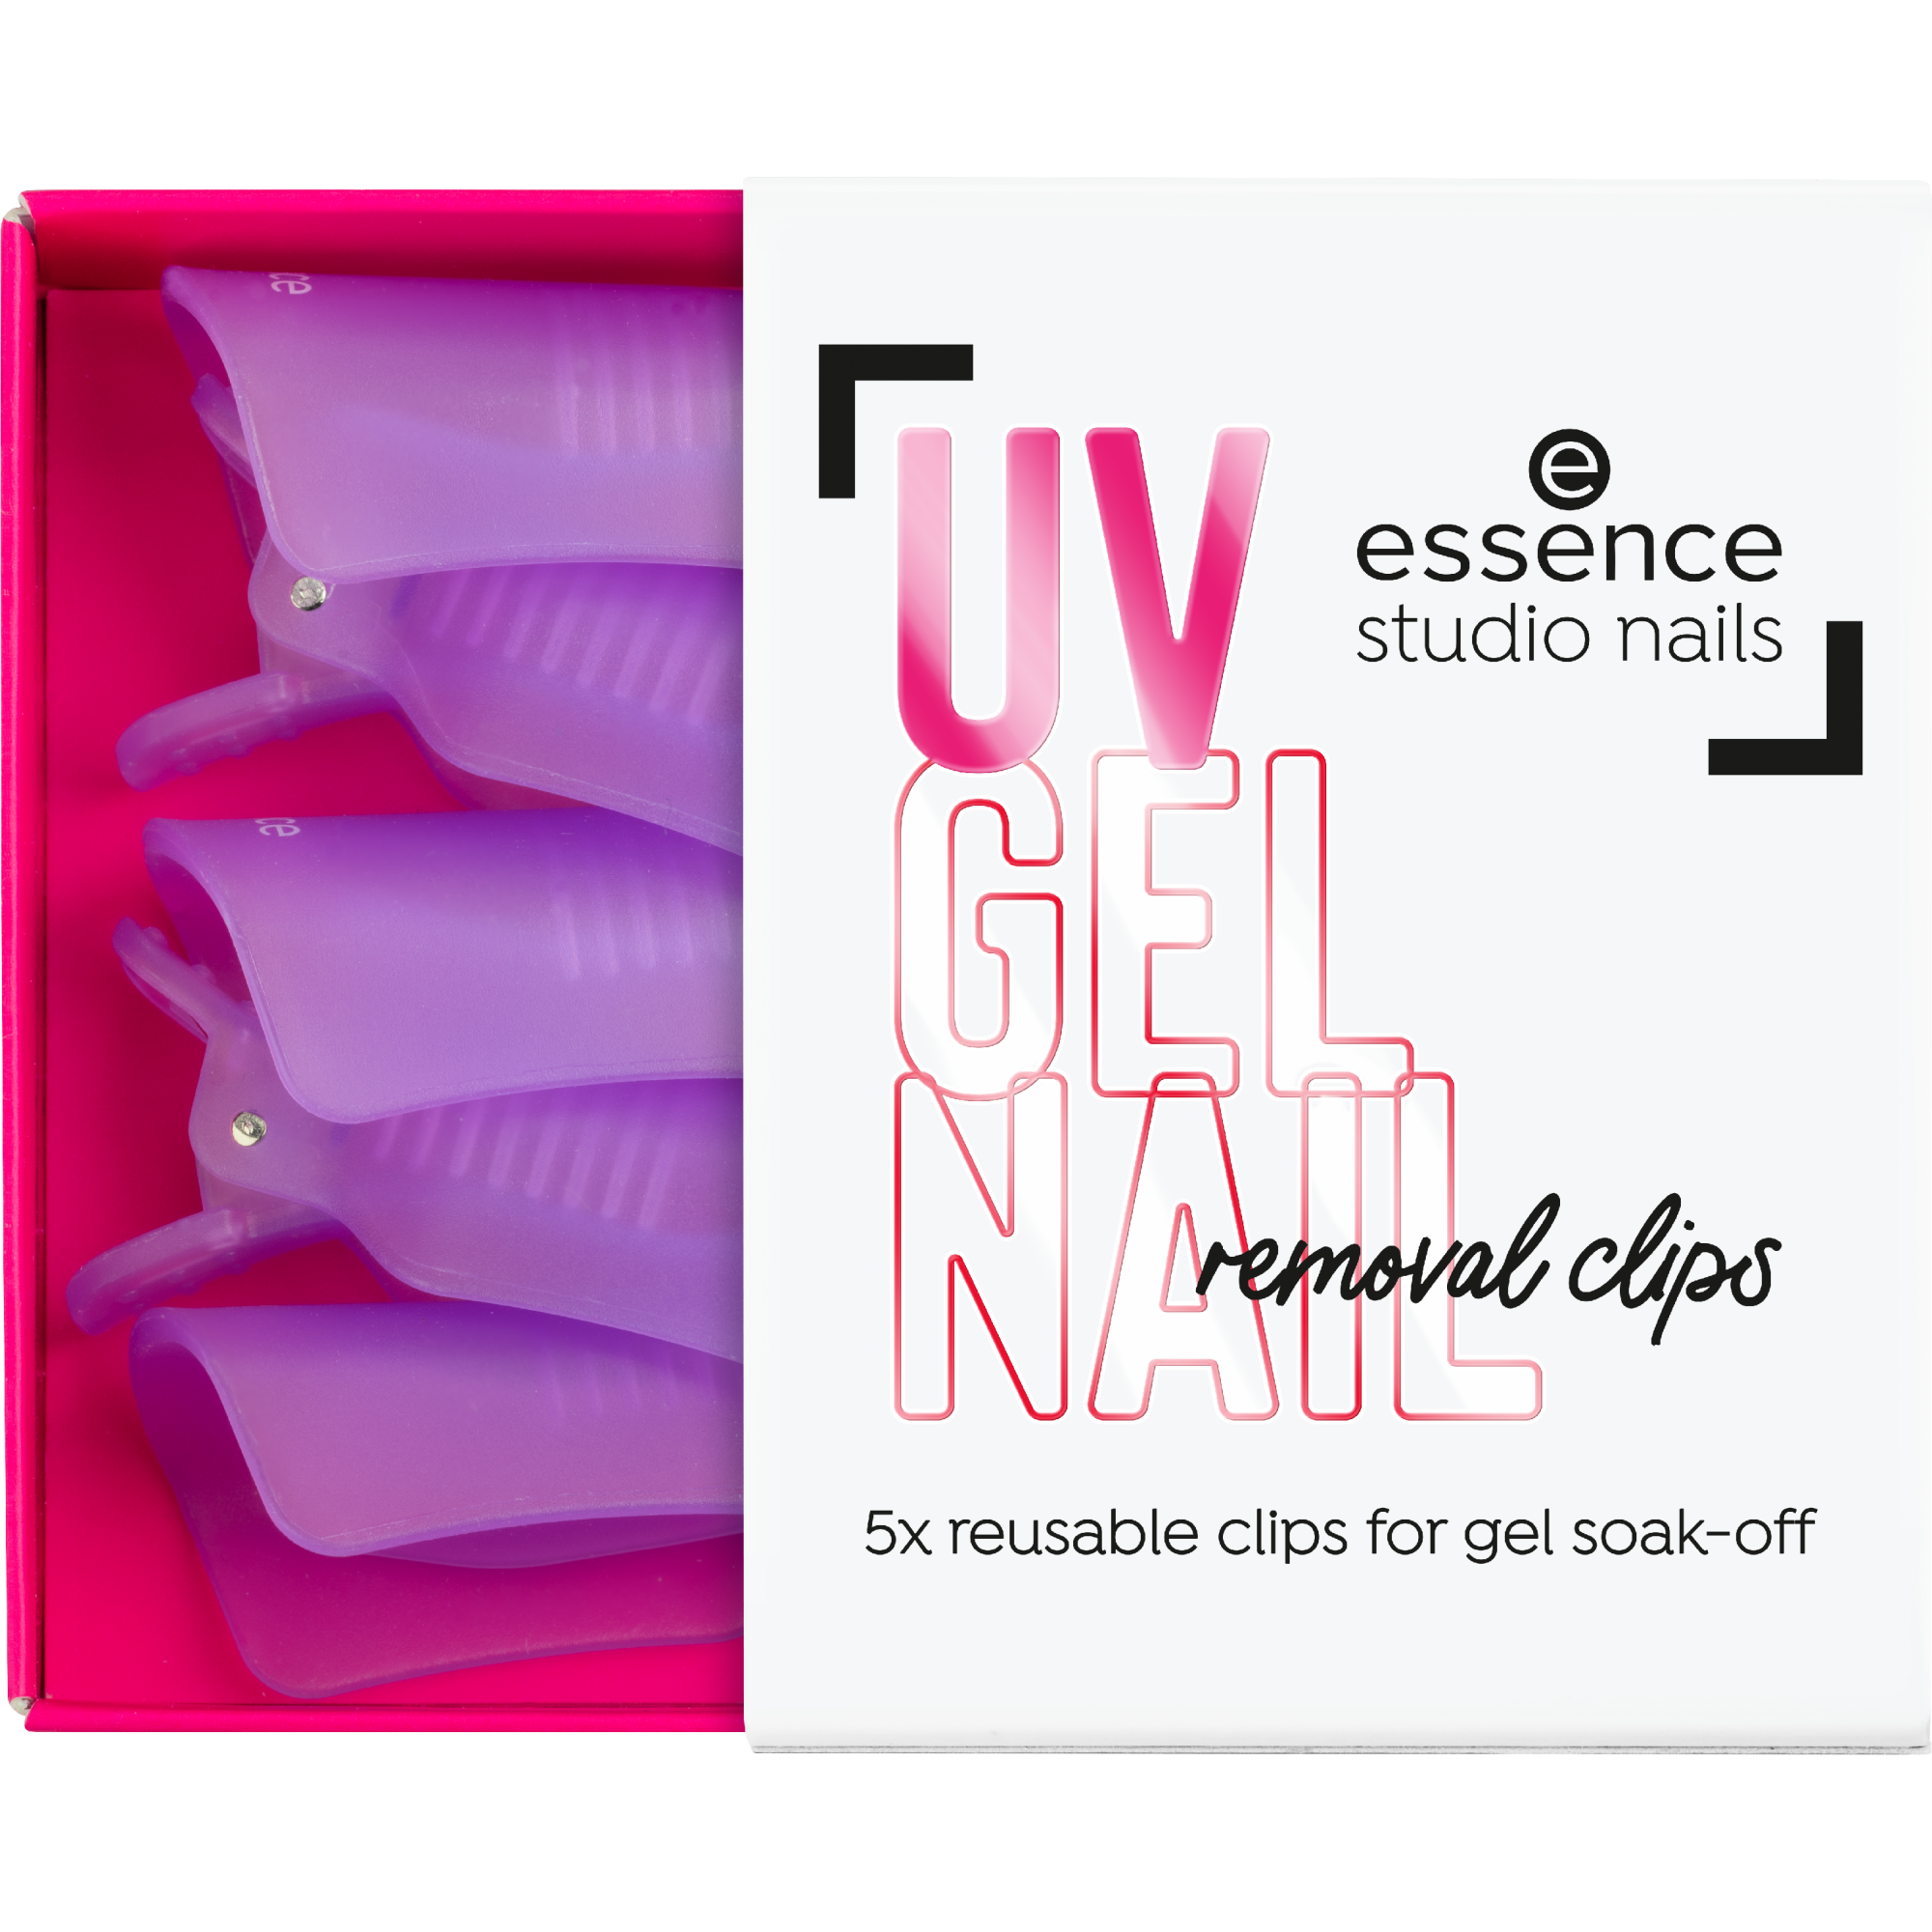 studio nails UV GEL NAIL removal clips